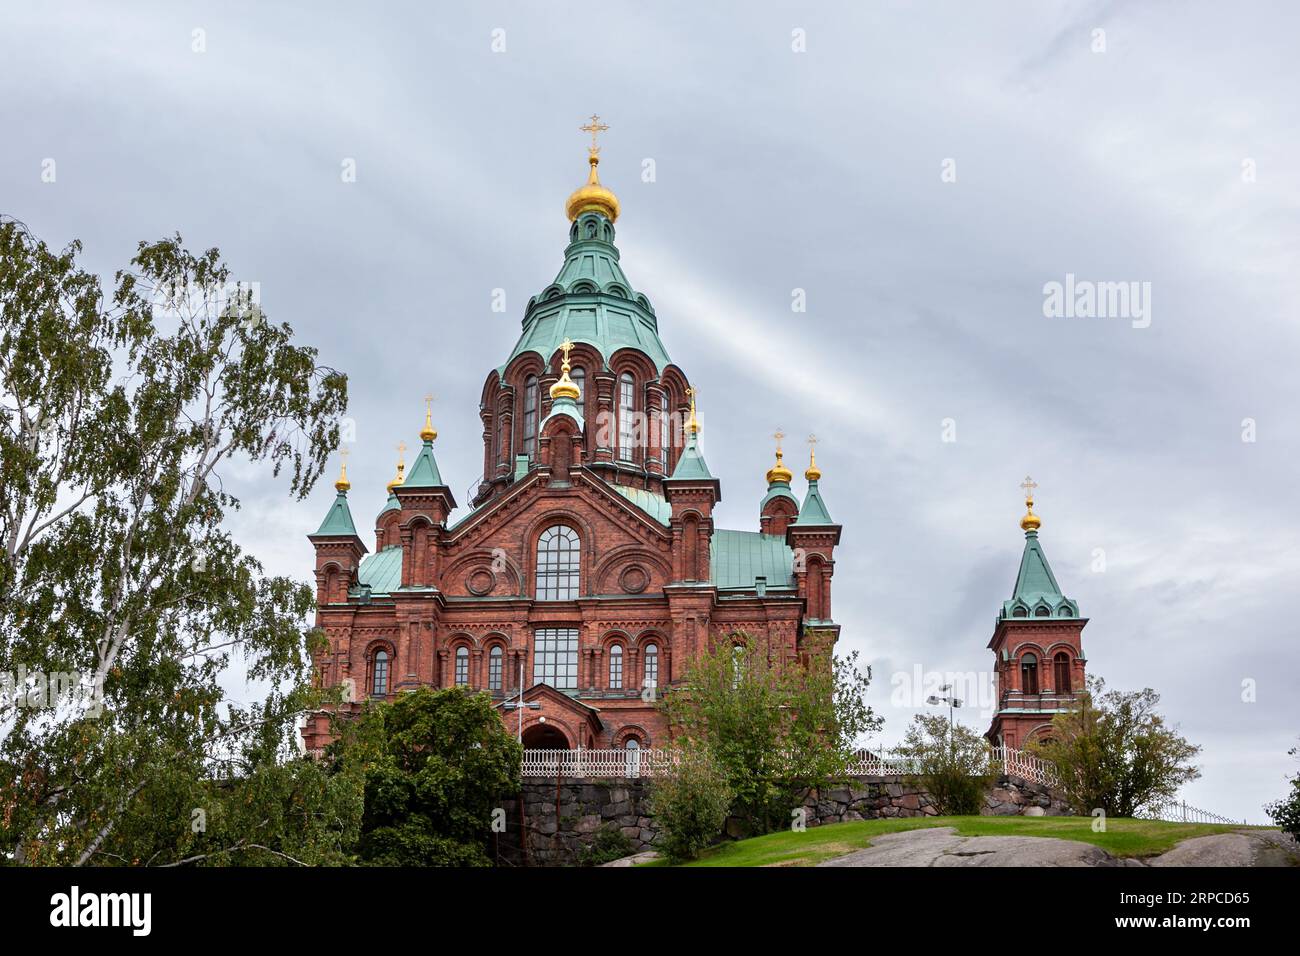 La cathédrale d'Uspenski est une cathédrale orthodoxe orientale située à Helsinki, en Finlande. Banque D'Images